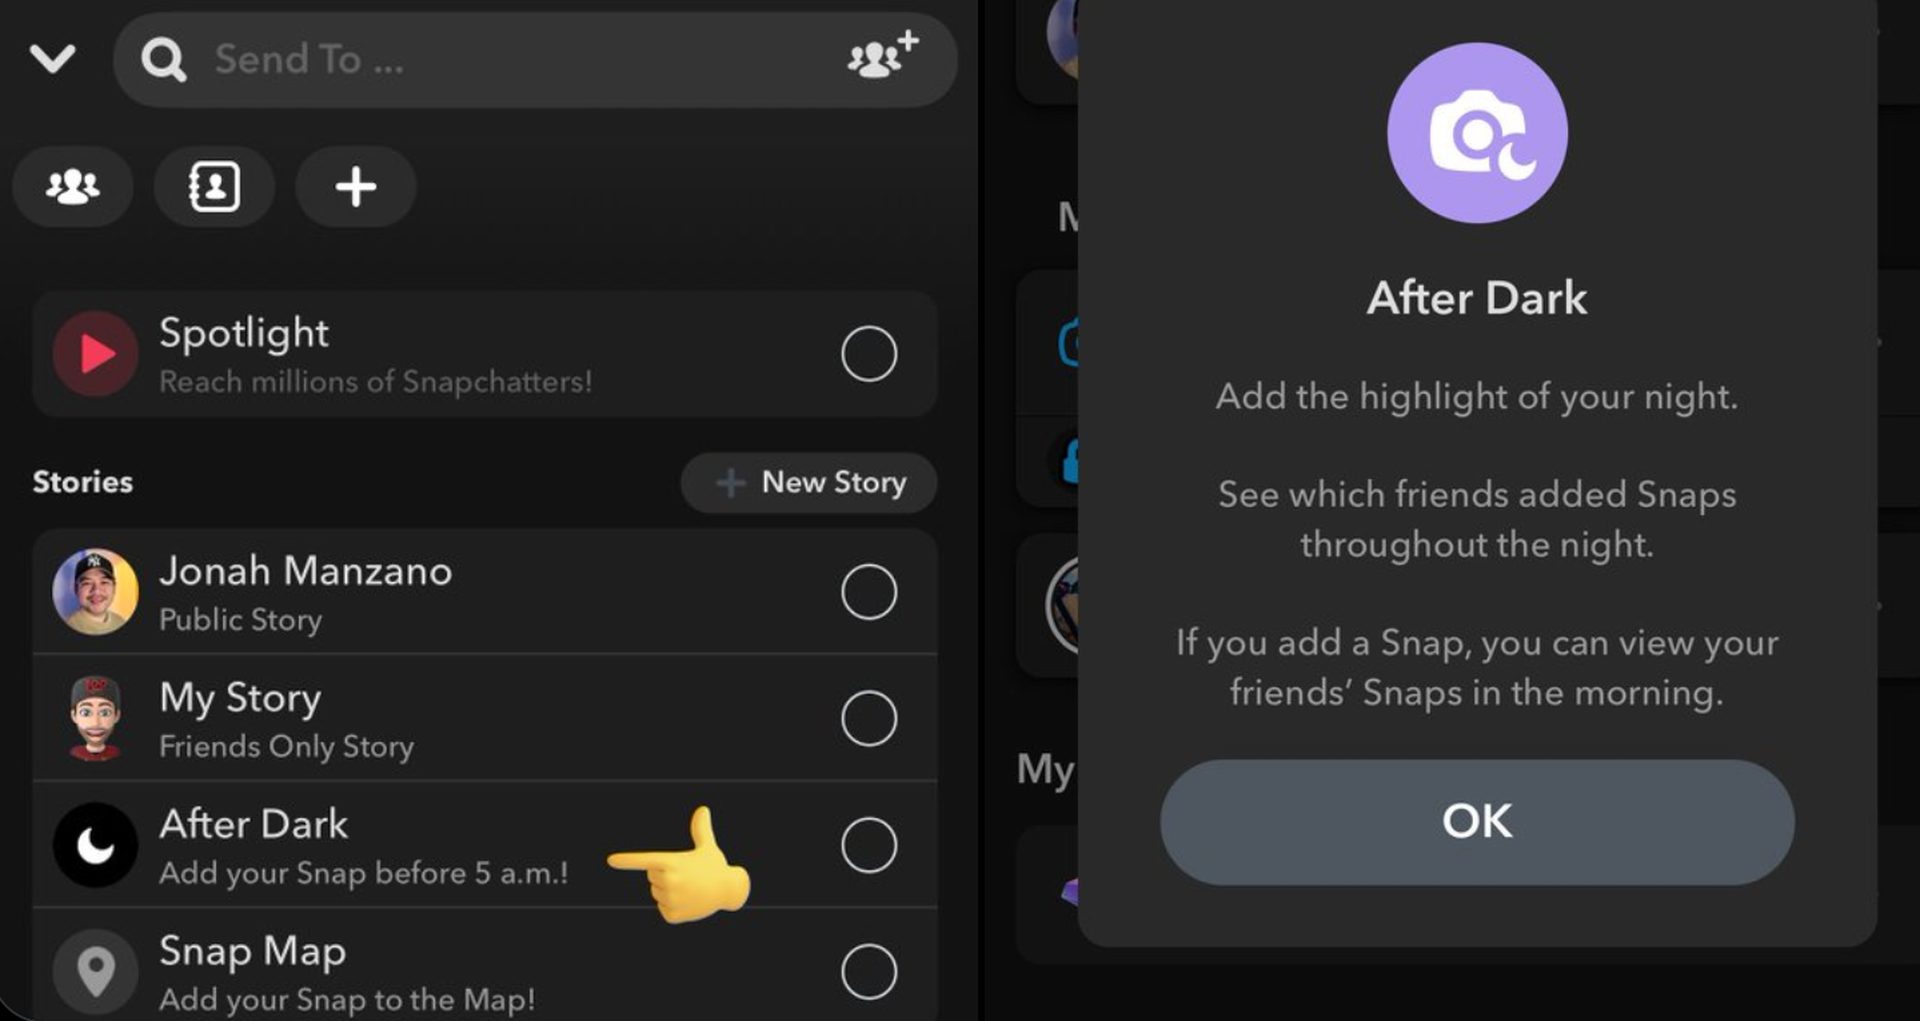 ¿Qué es Snapchat después del anochecer? Aprenda cómo publicar un Snapchat After Dark Snap y eliminar uno. ¡Sigue leyendo y explora esta función similar a BeReal!